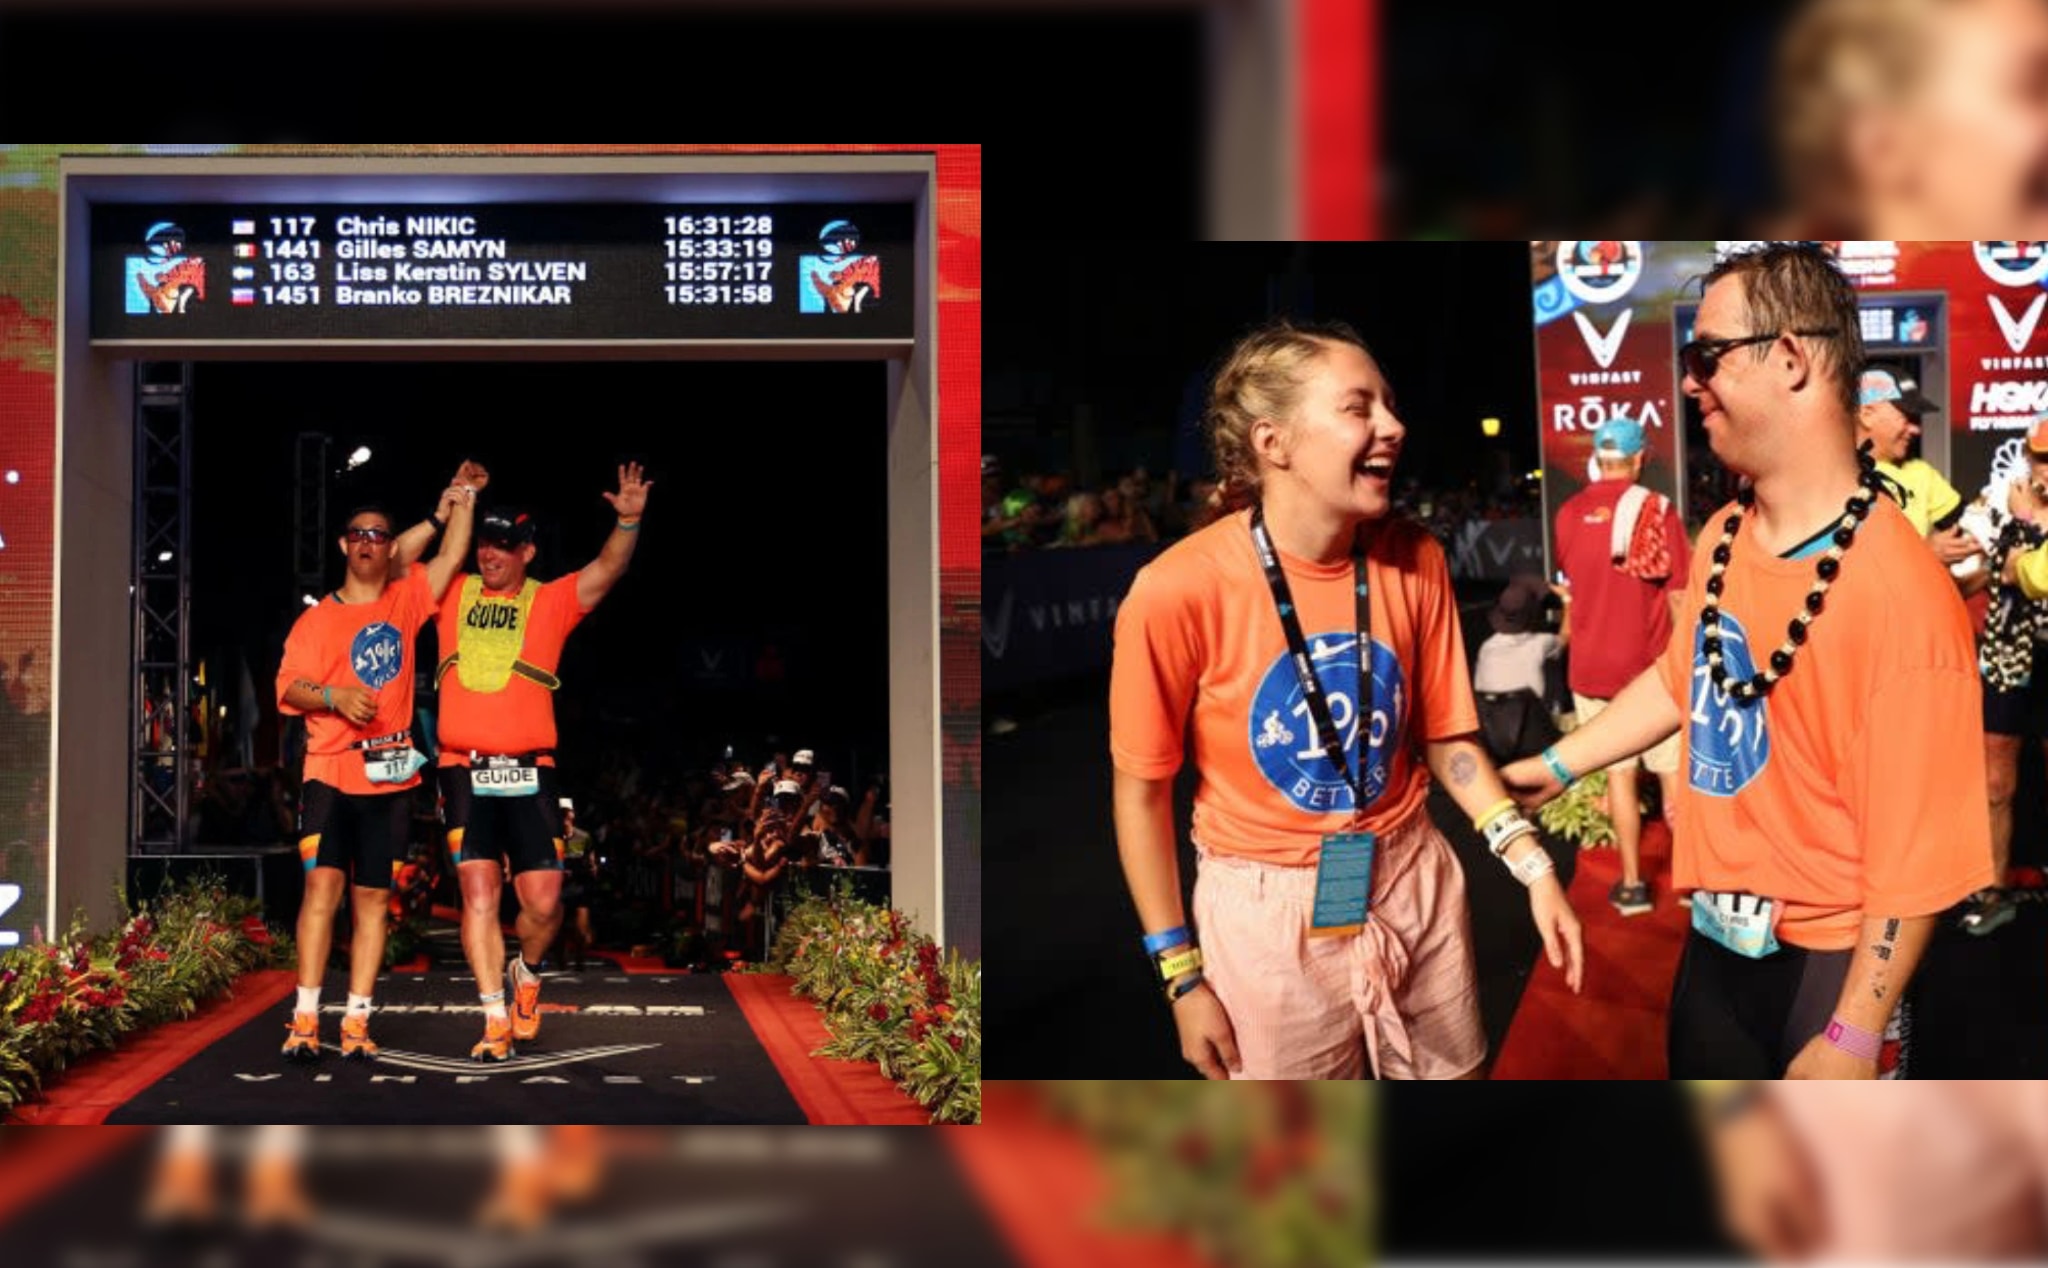 Chris Nikic - người mắc hội chứng Down đầu tiên hoàn thành giải Vô địch Ironman toàn thế giới